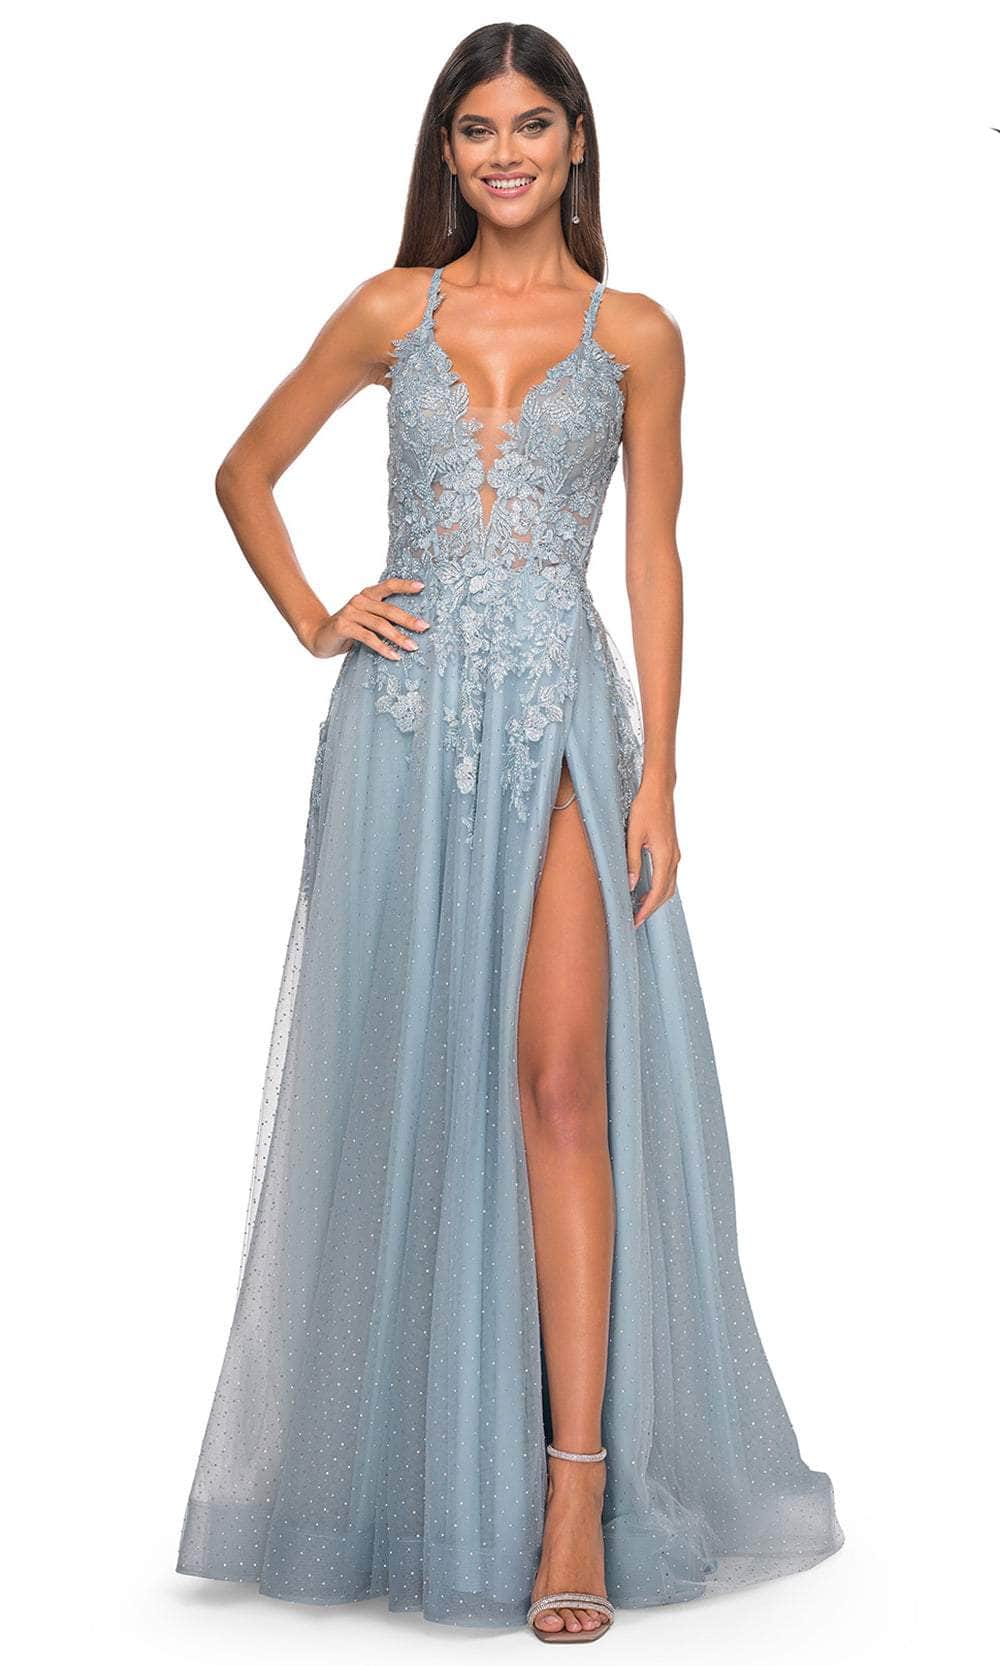 La Femme 32147 - Lace Applique Prom Dress with Slit
